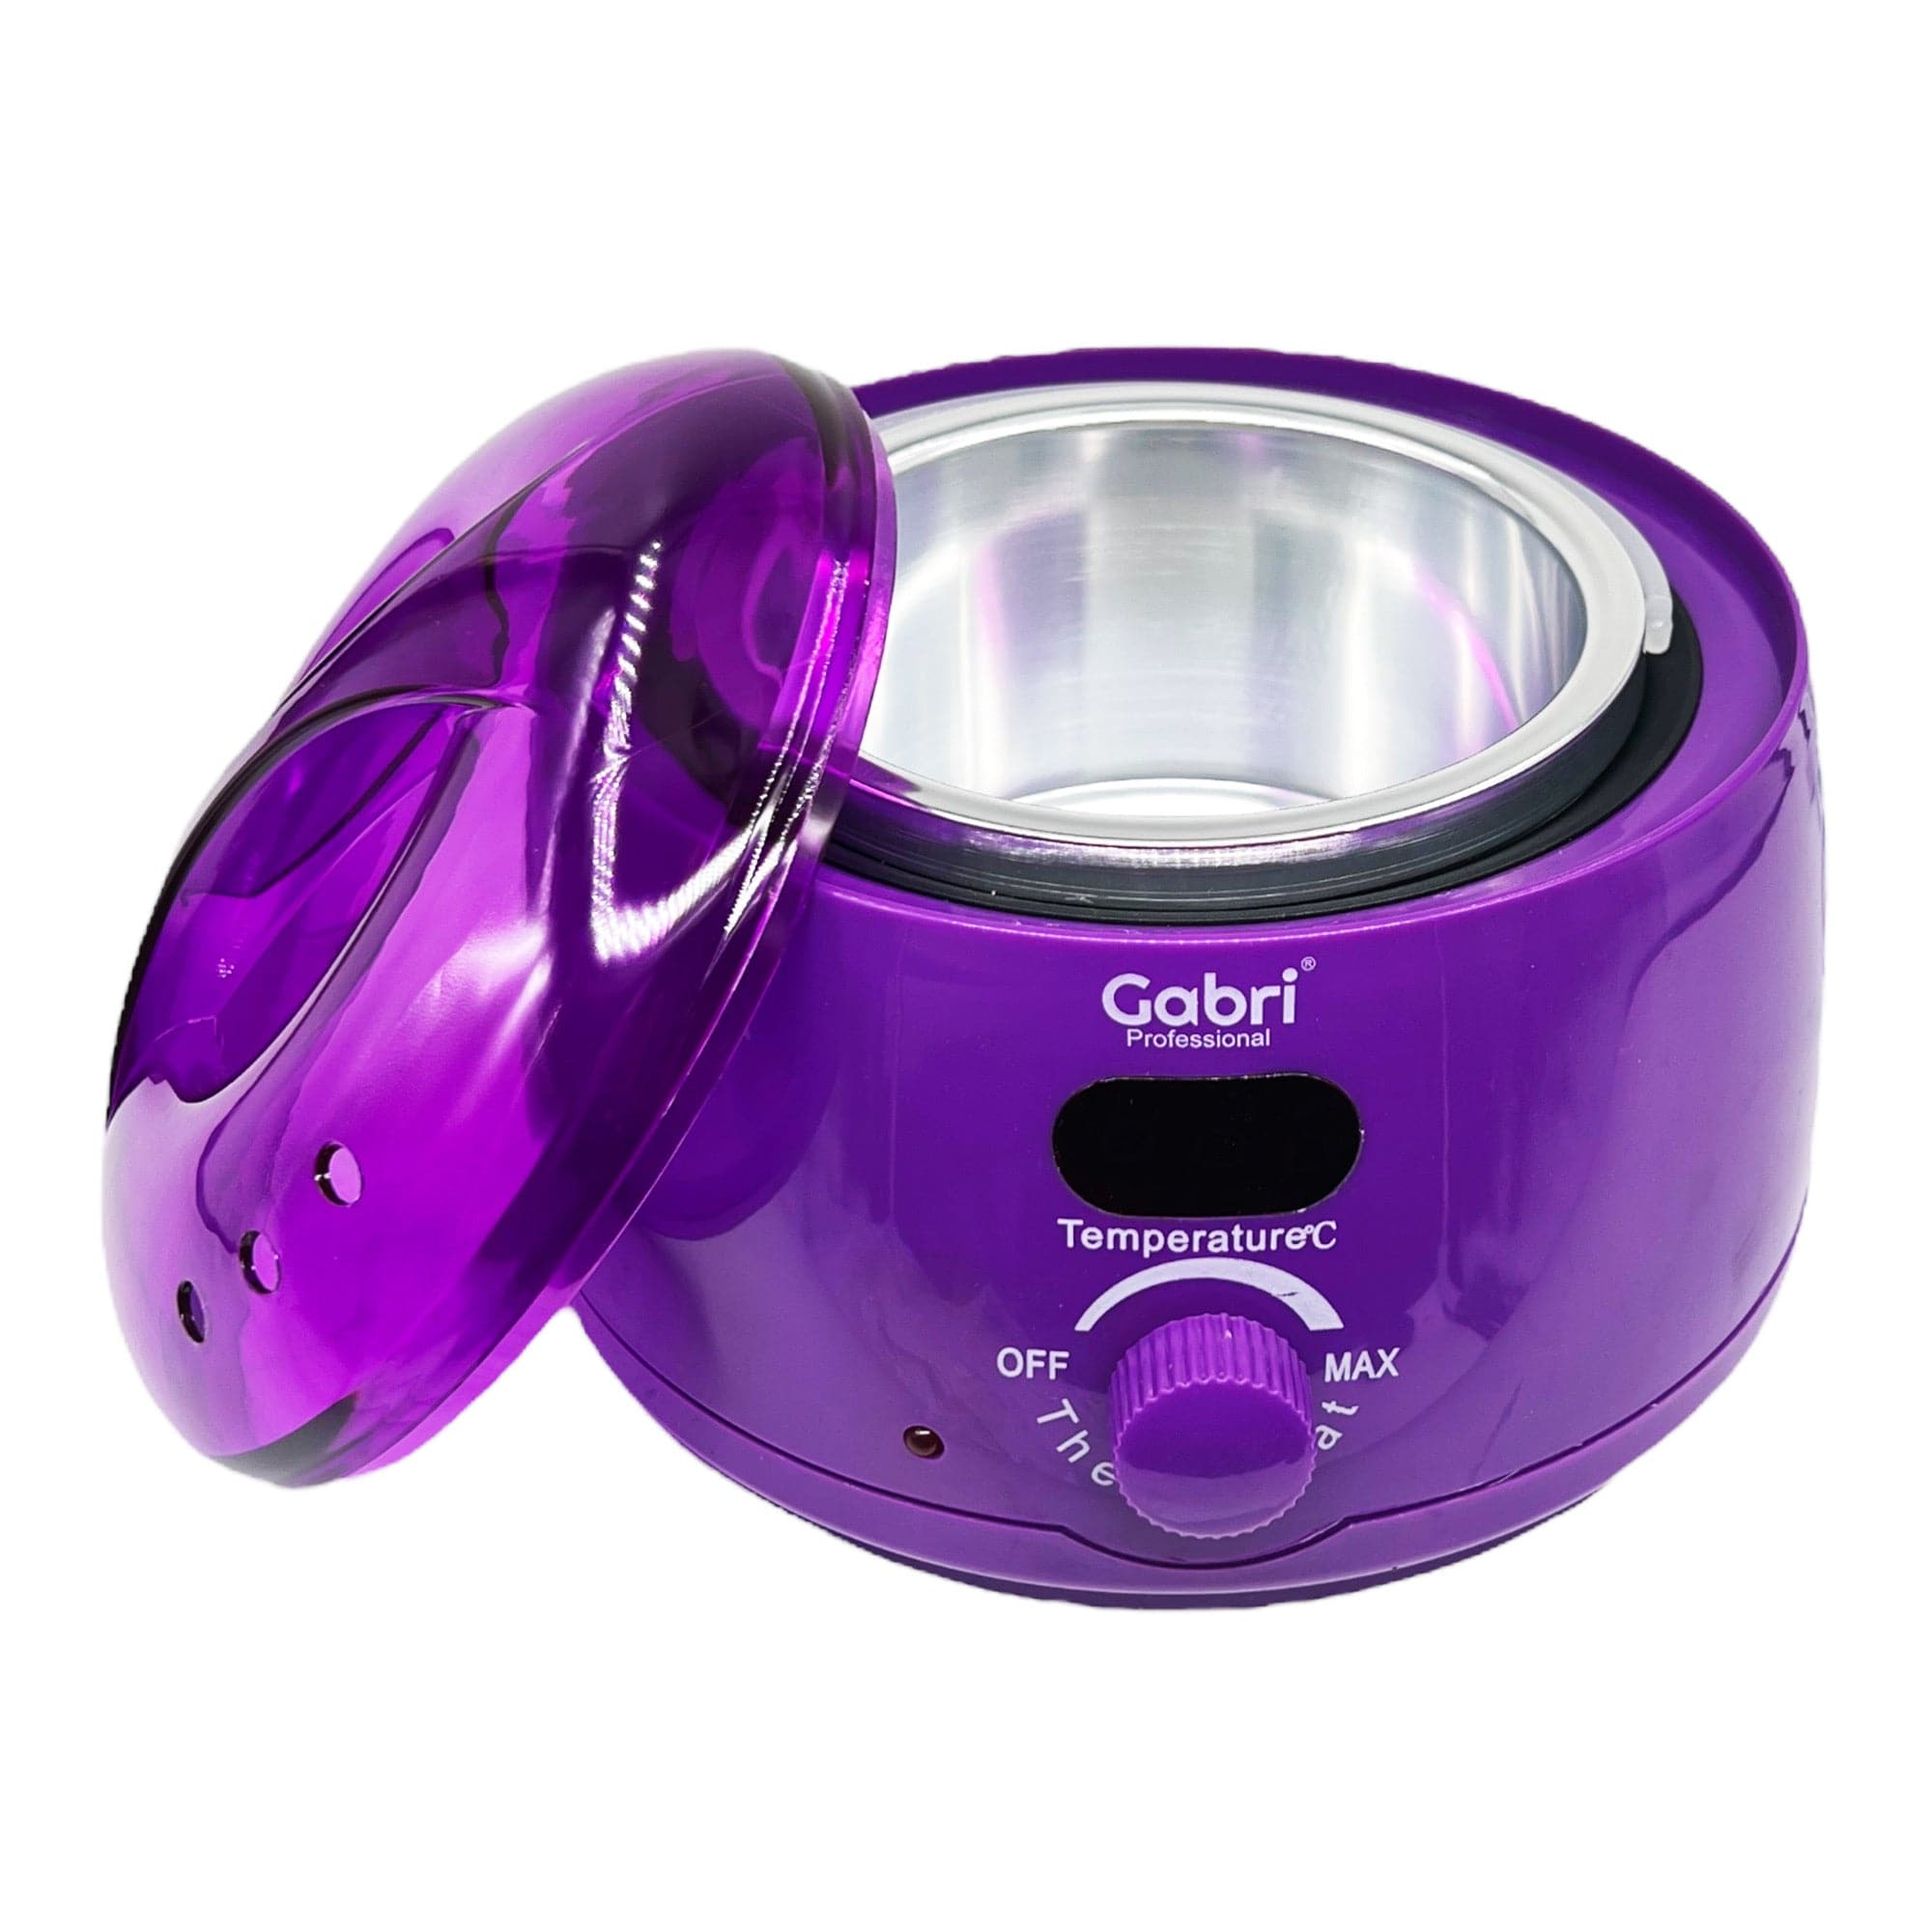 Gabri - Wax Heater Warmer Single Pot (Purple)